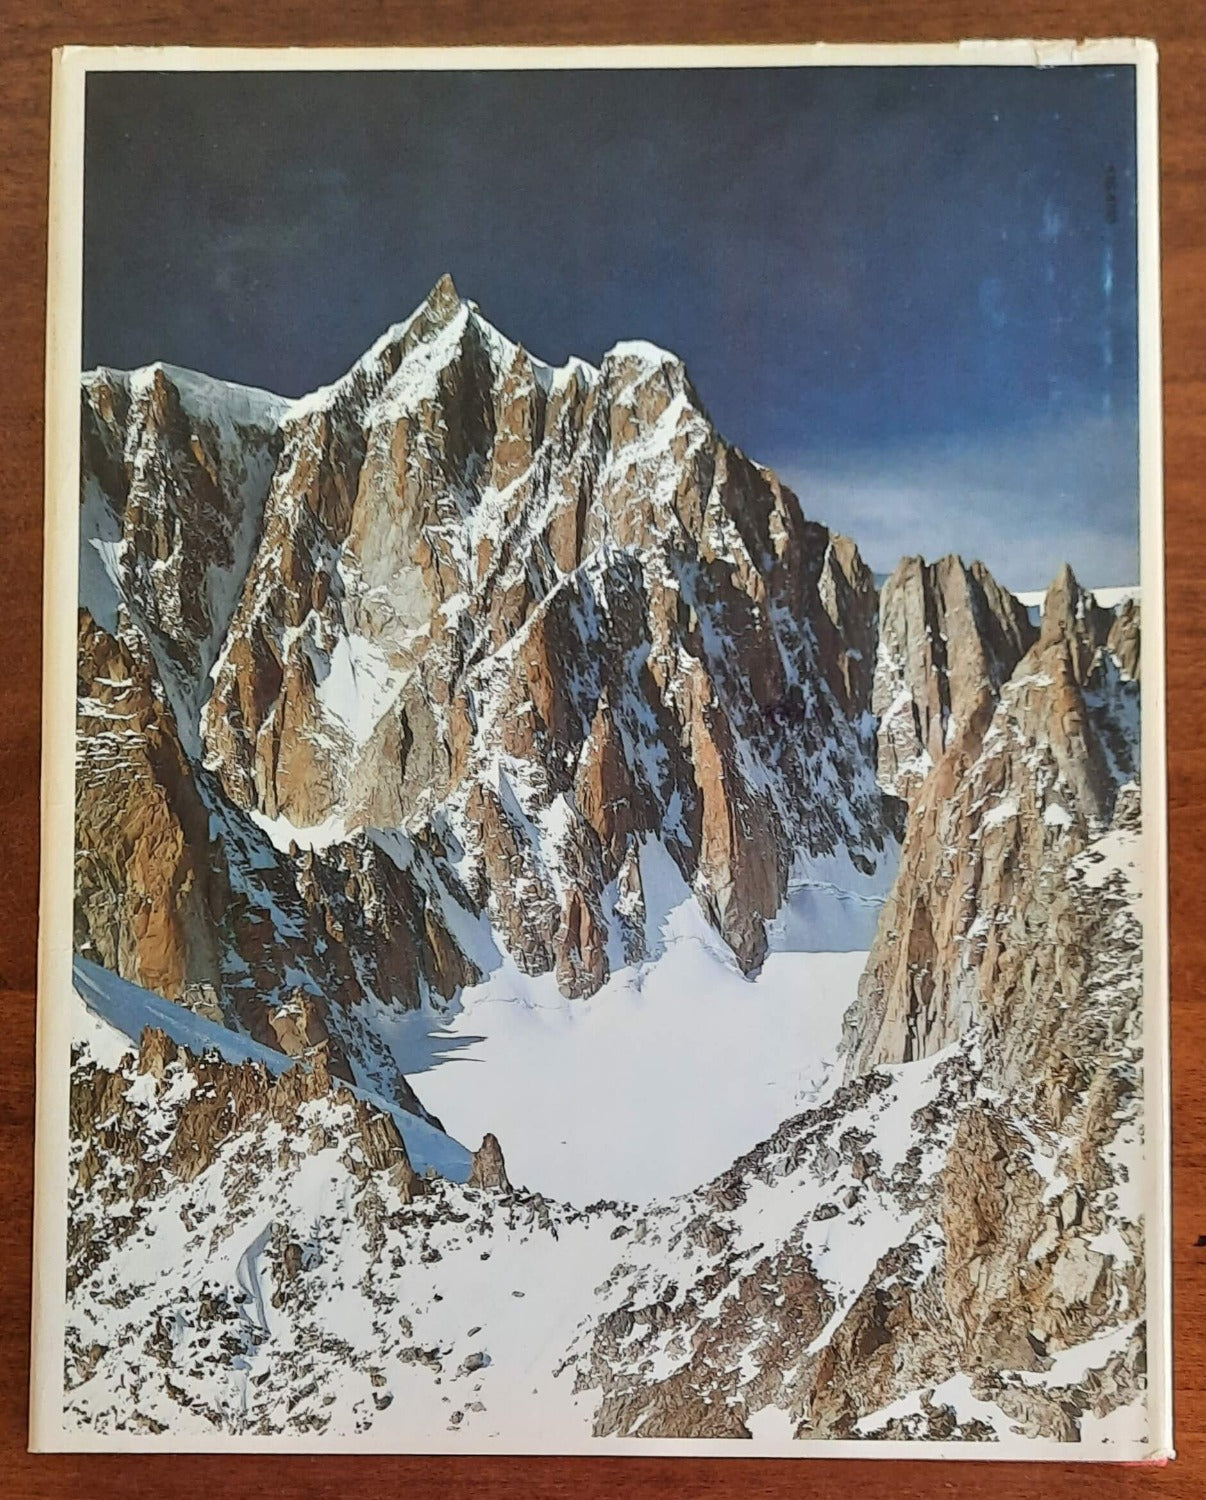 I «Quattromila» delle Alpi. 60 cime, la loro storia, i punti d’appoggio, le vie di salita 	